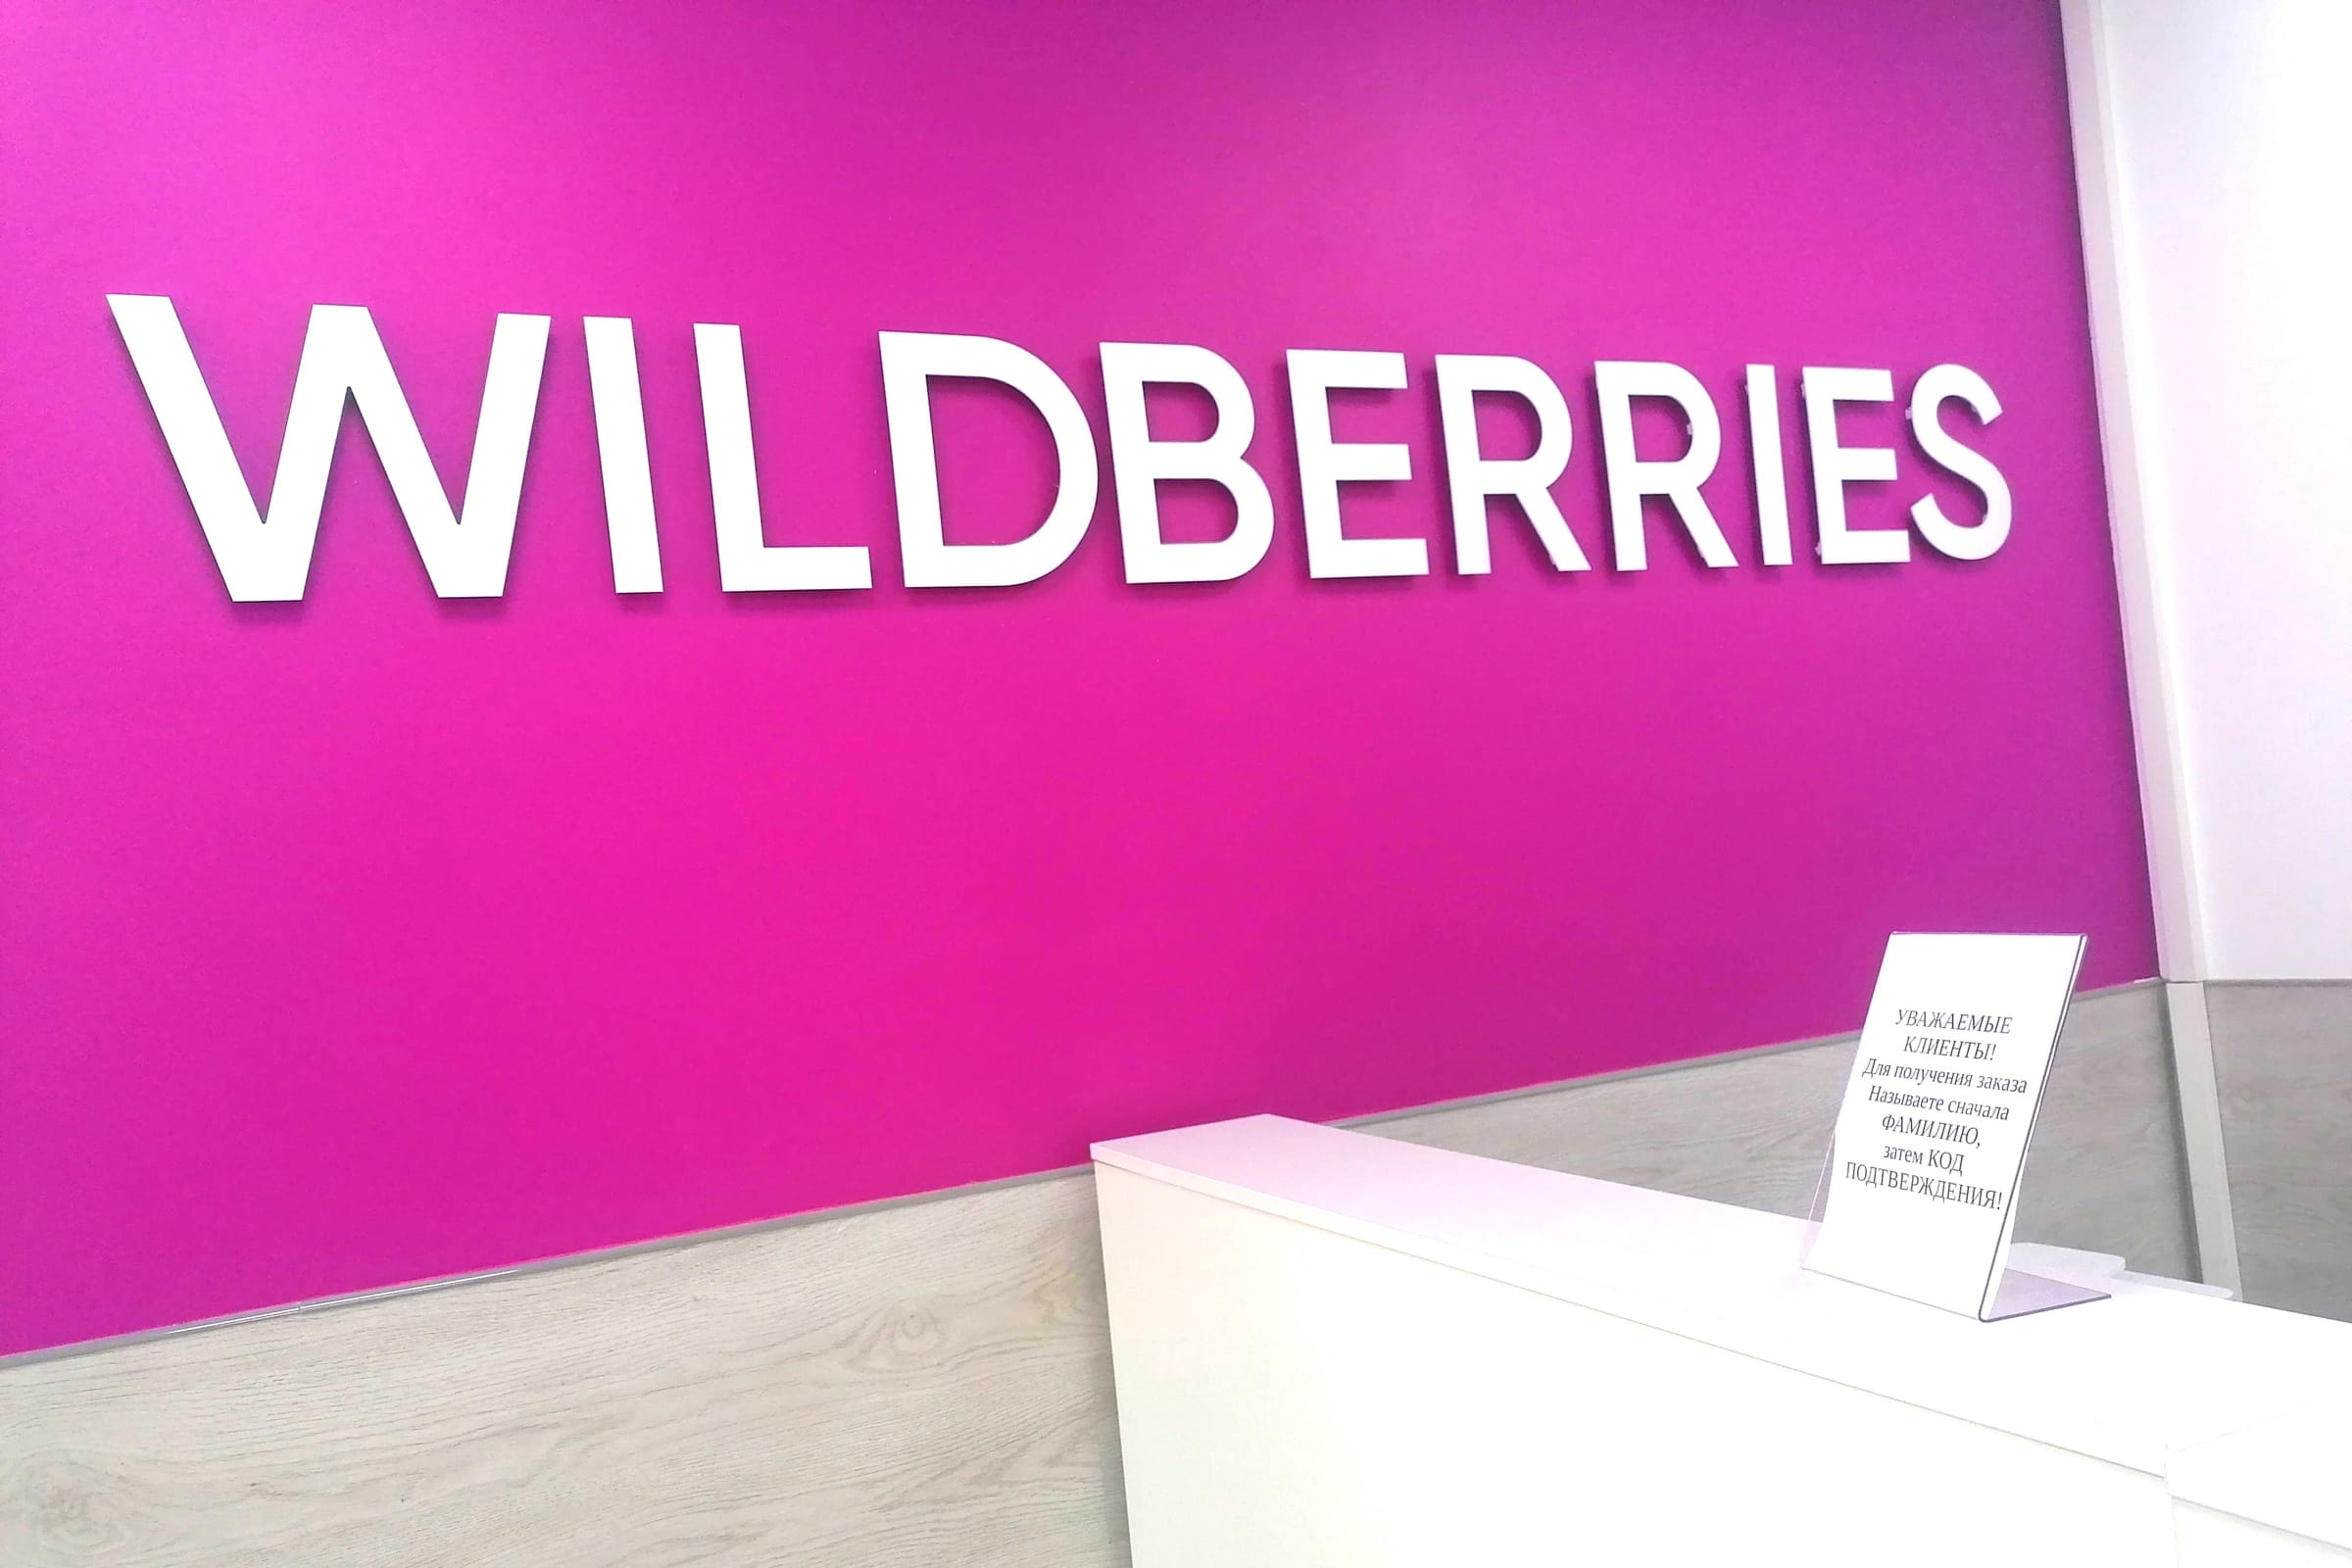 Валдберис бизнес. Вайлдберриз. Wildberries логотип. Вайлдберриз магазин. Wildberries баннер.